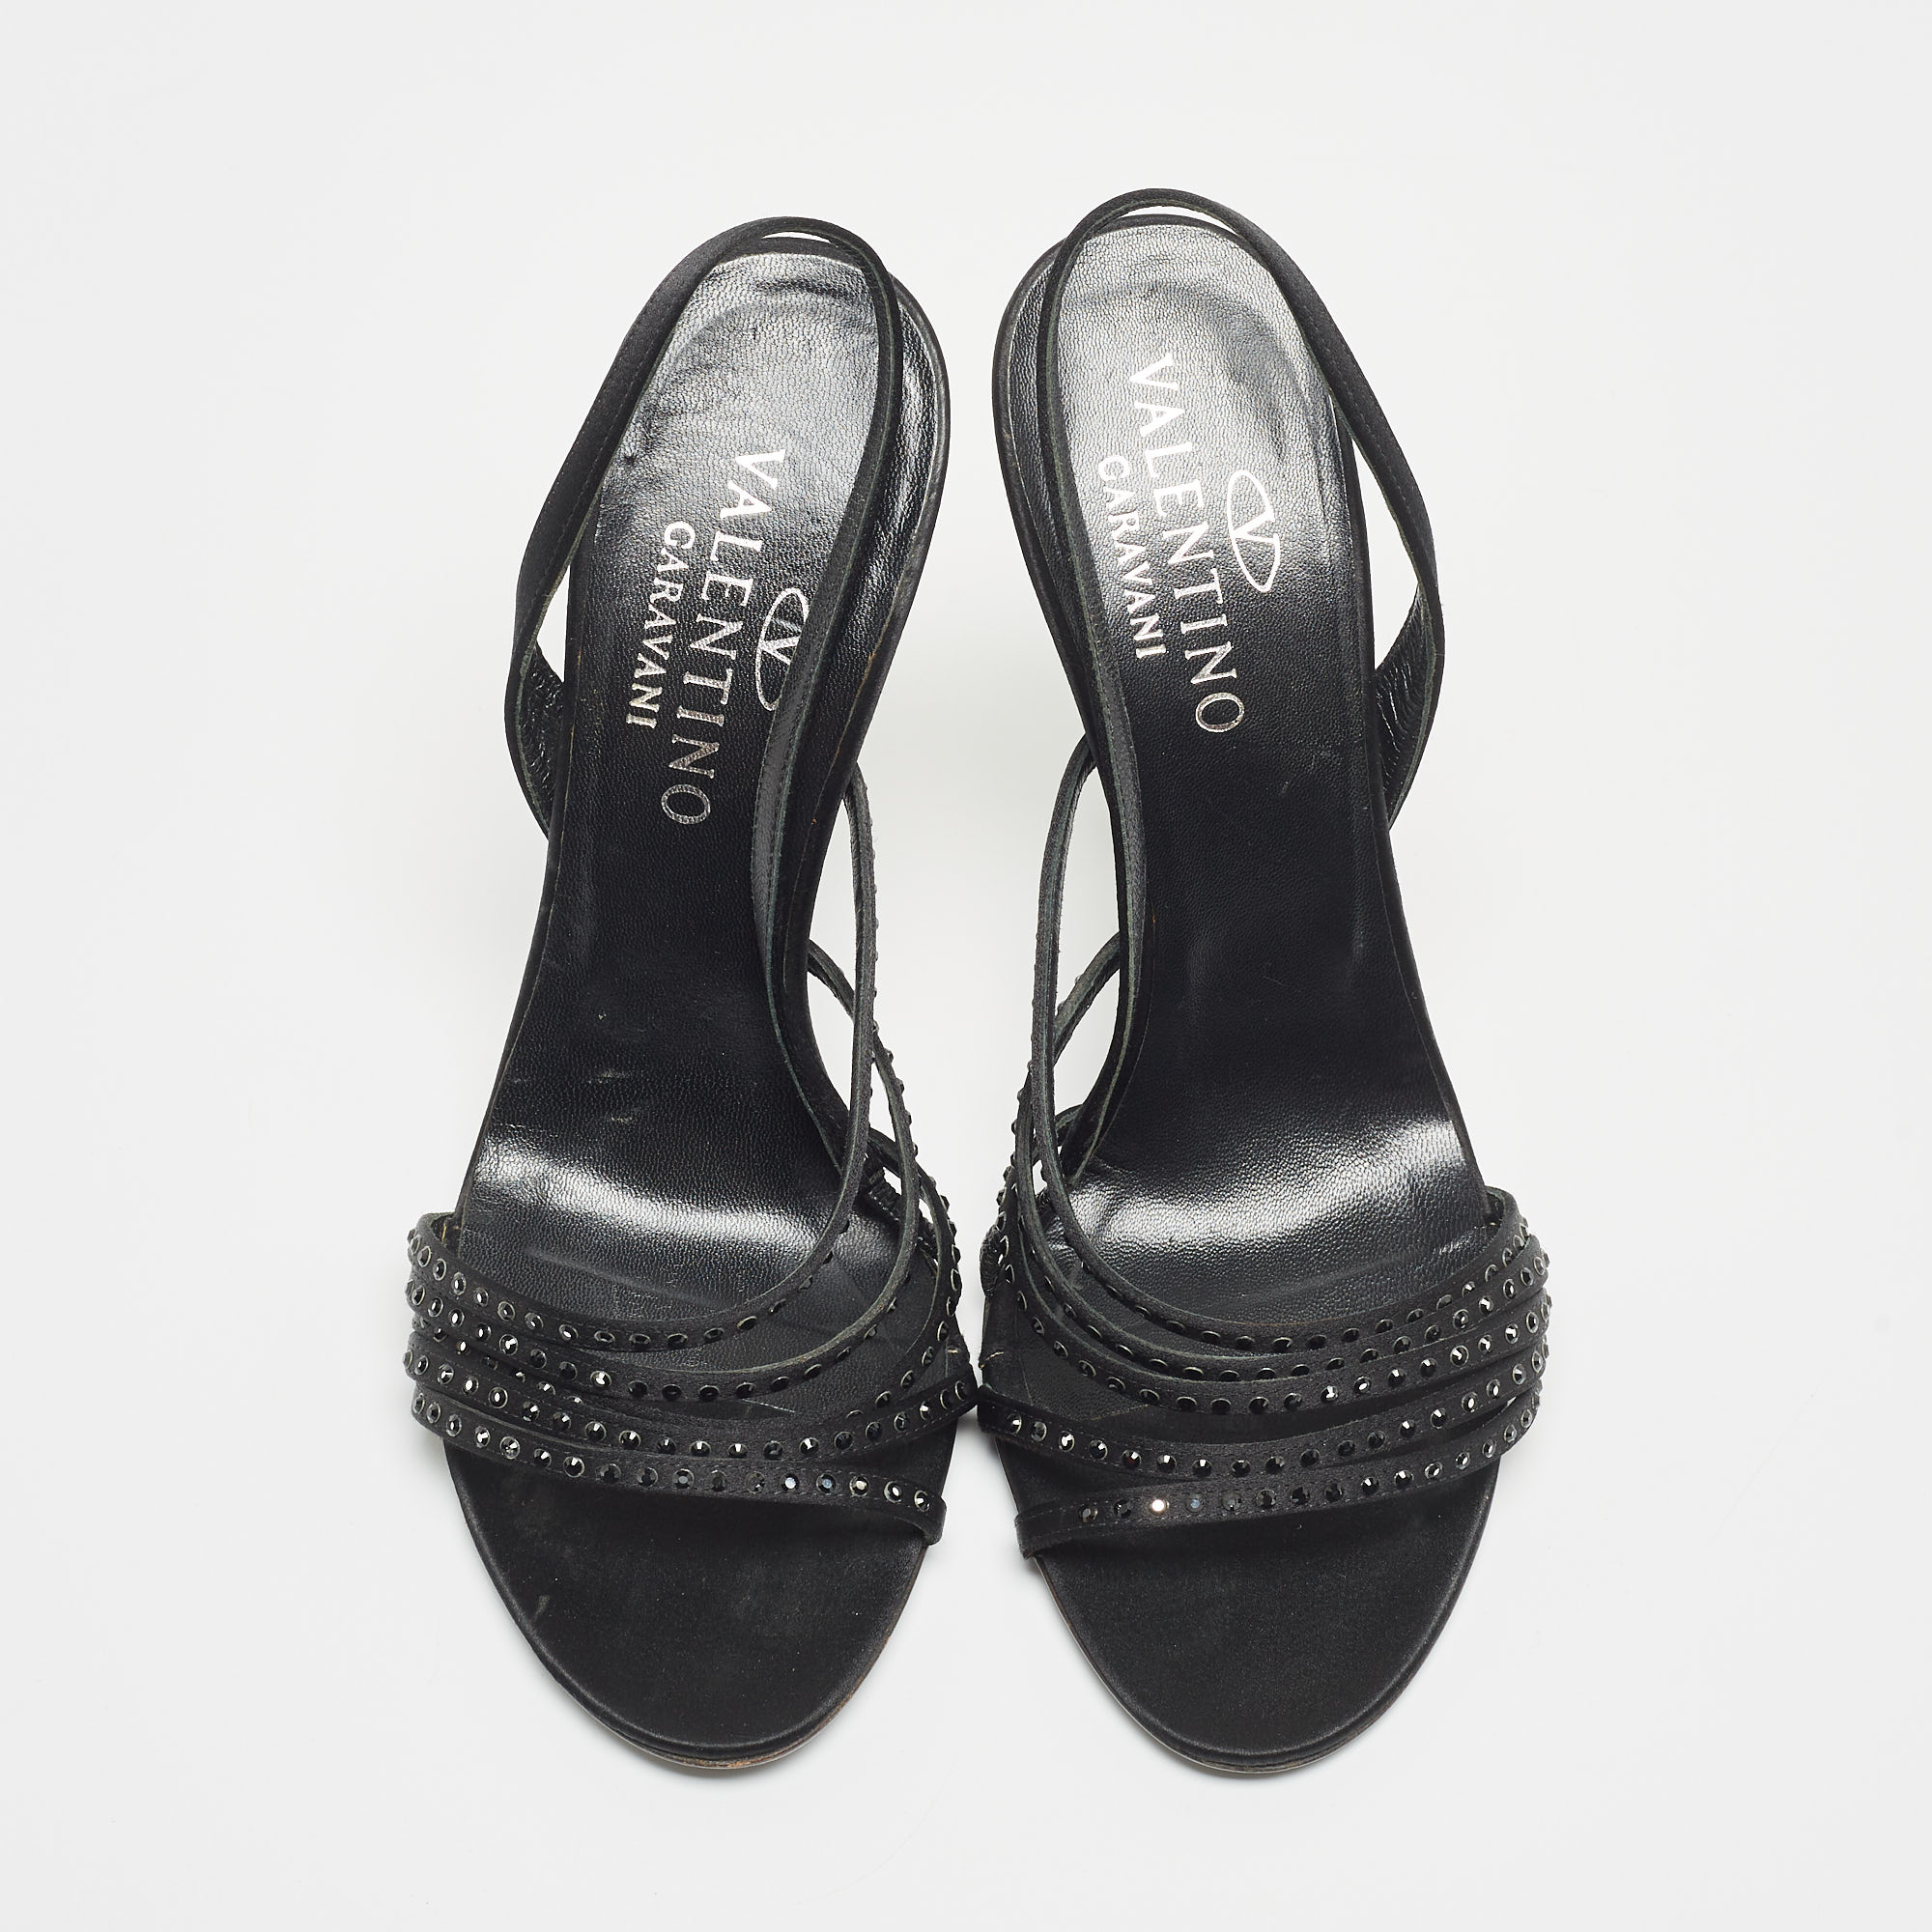 Valentino Black Satin Crystal Embellished Slingback Sandals Size 37.5